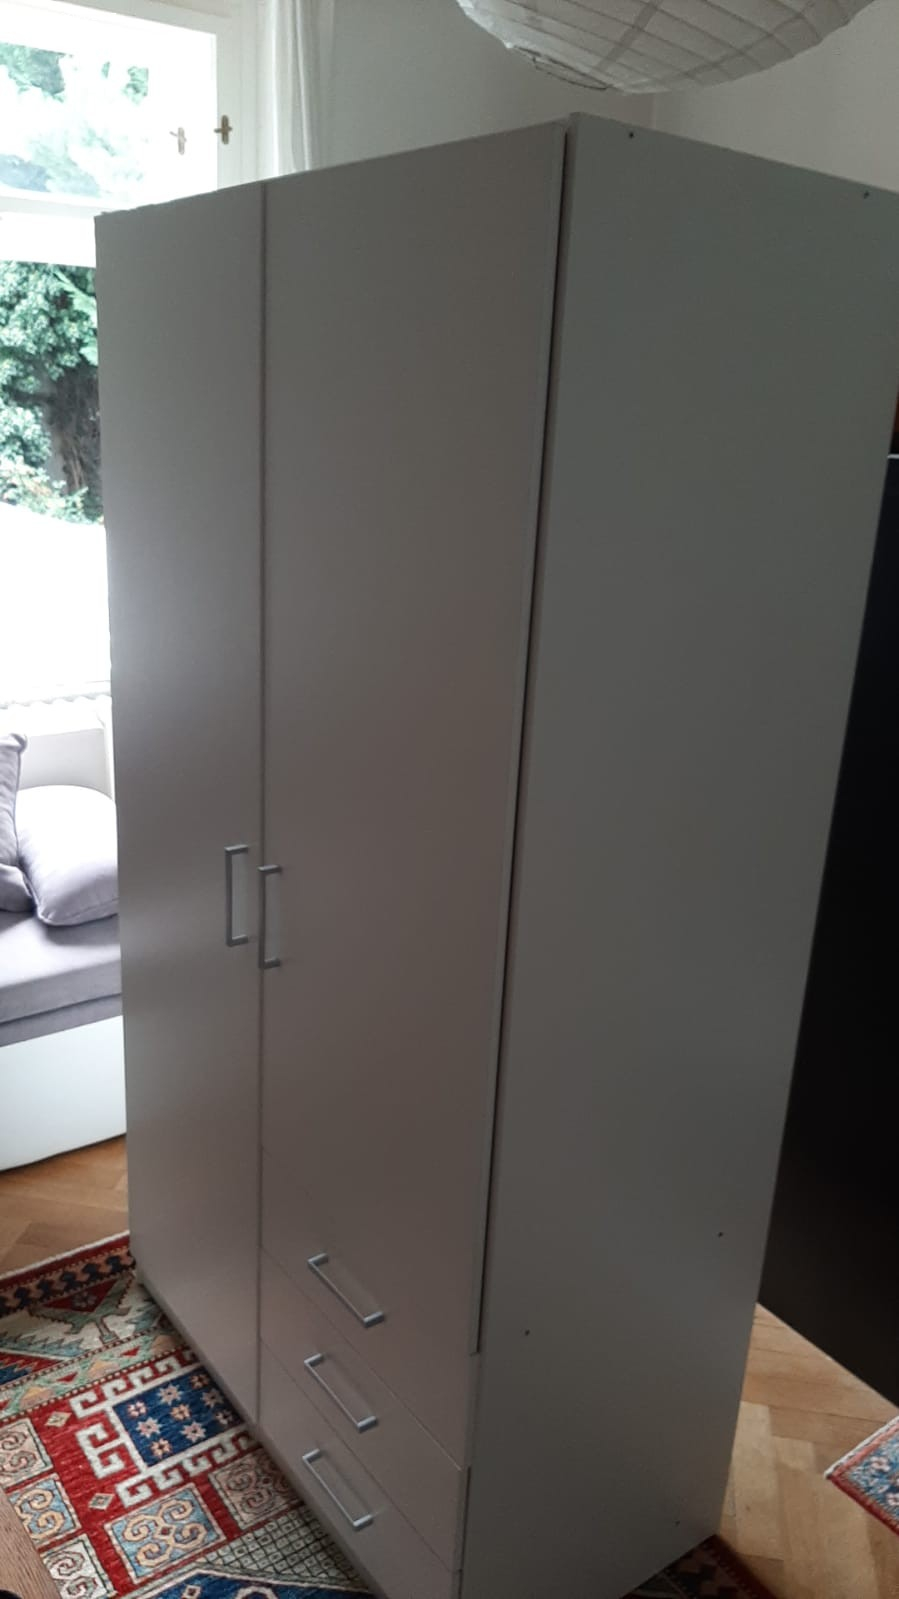 Bílá skříň Ikea za odvoz. v176 š97 hl50, bílá, málo používaná, rozdělená na část policovou a šatníkovou